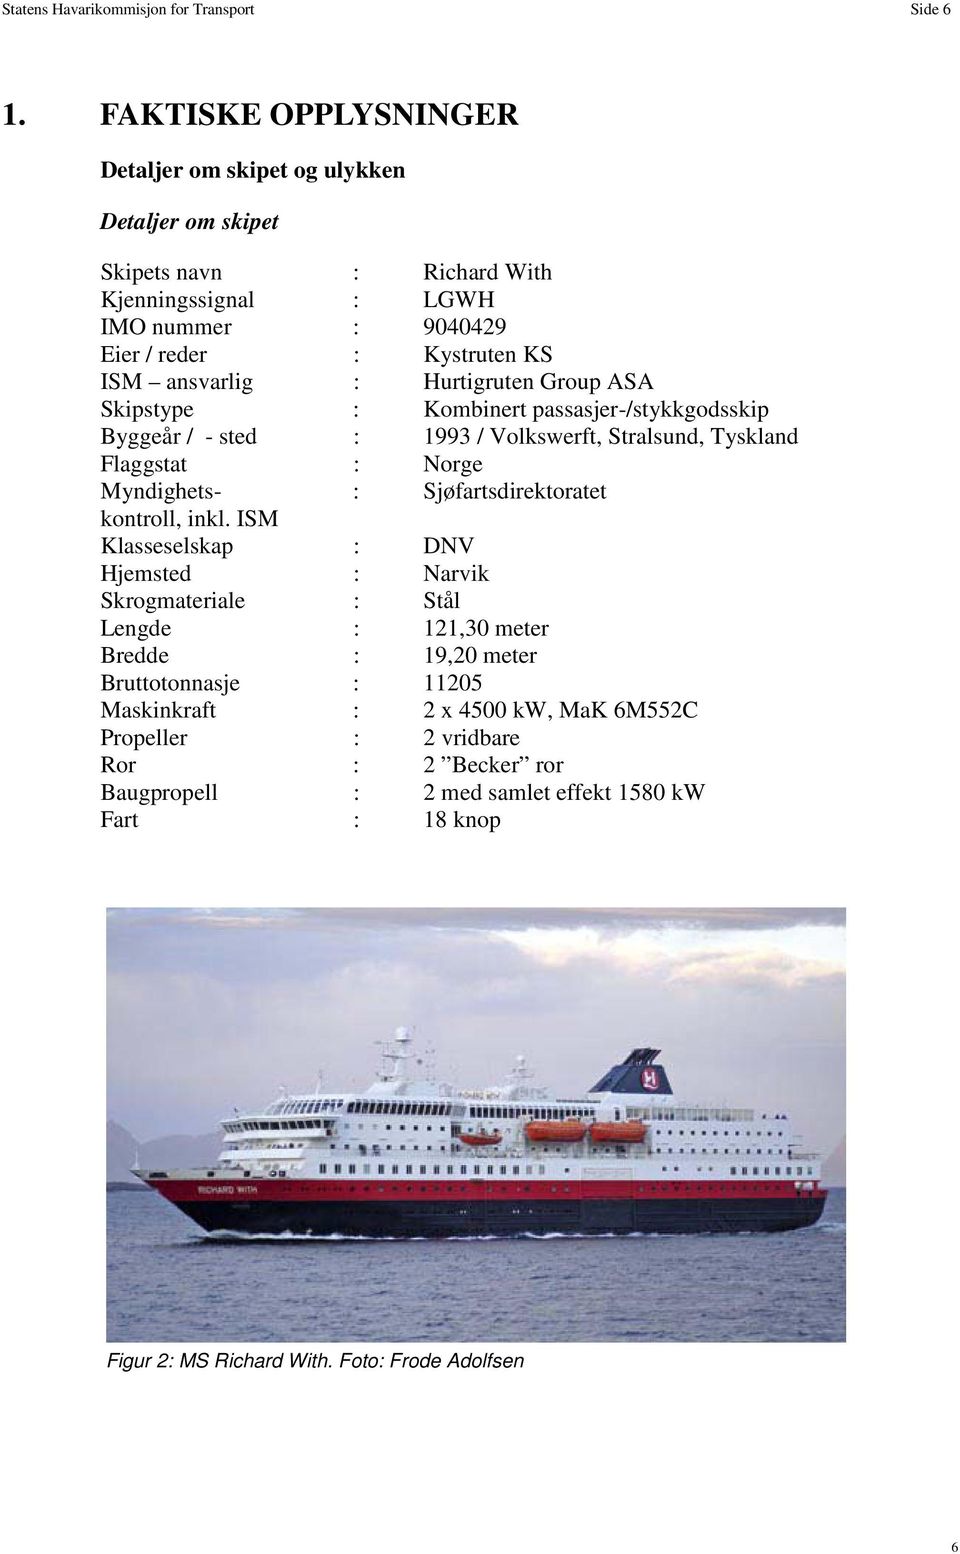 Hurtigruten Group ASA Skipstype : Kombinert passasjer-/stykkgodsskip Byggeår / - sted : 1993 / Volkswerft, Stralsund, Tyskland Flaggstat : Norge Myndighets- : Sjøfartsdirektoratet